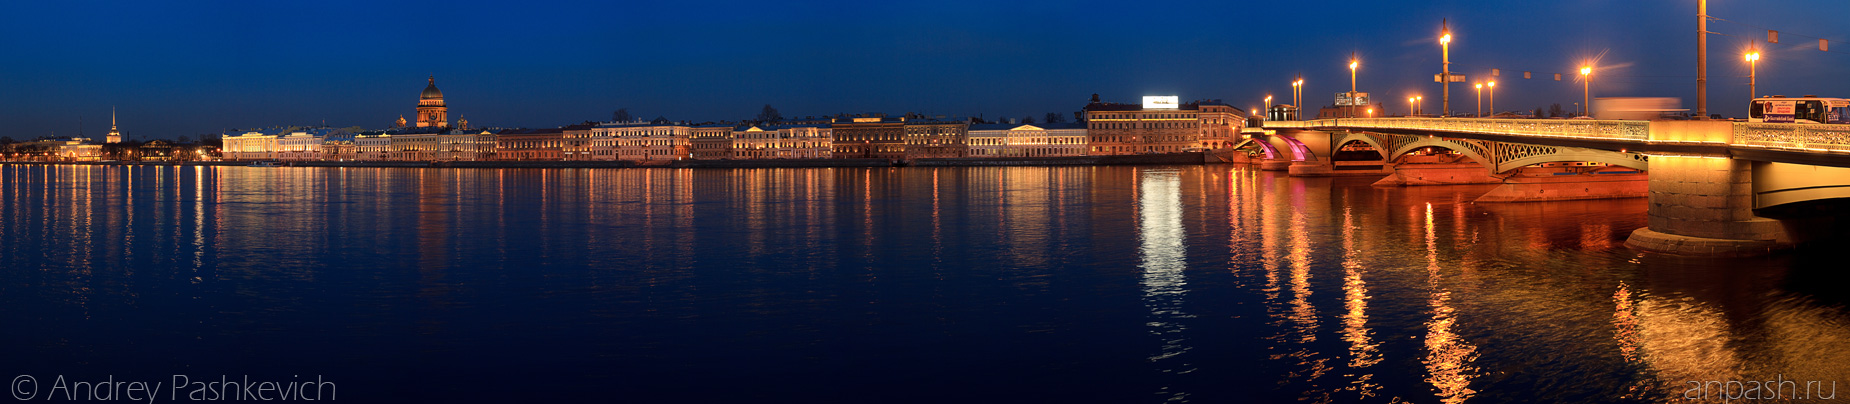 Красивые и необычные панорамные фотографии Санкт-Петербурга 4